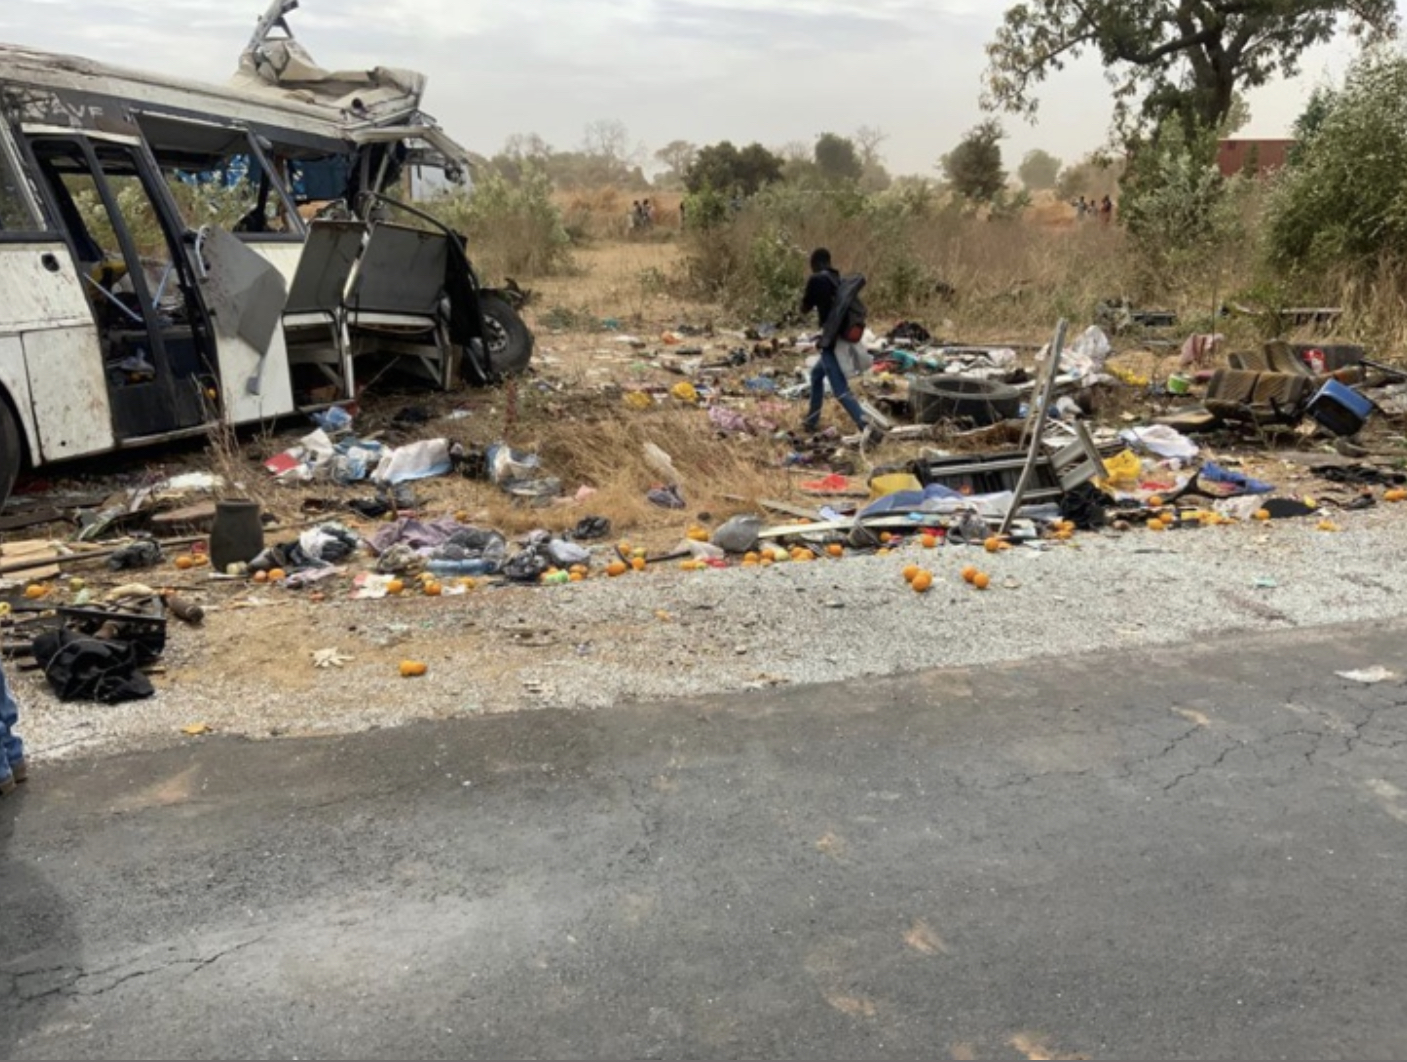 Accident sur la route de Kaffrine : A l’origine du drame, une défaillance mécanique